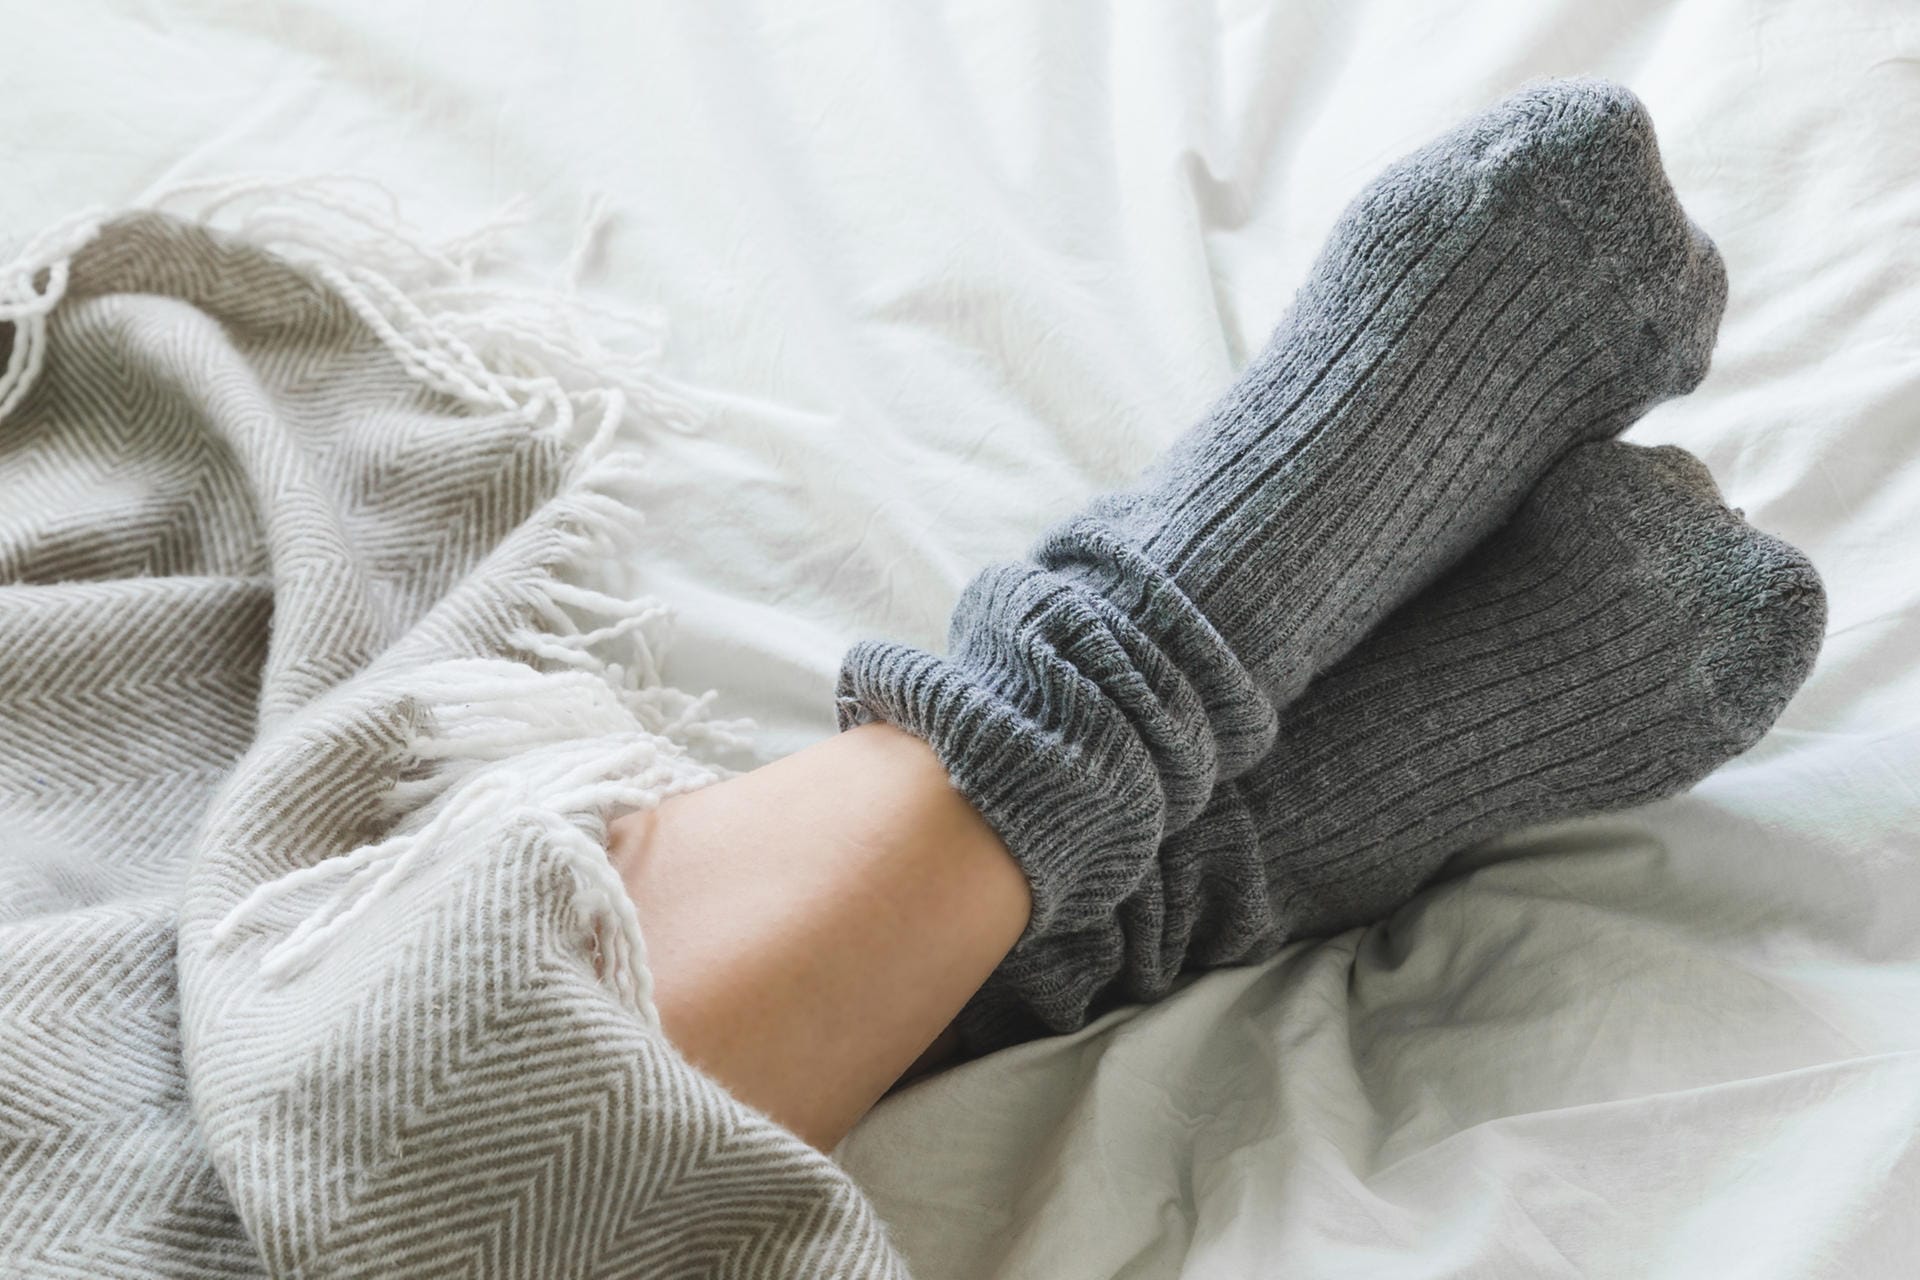 Kalte Füße trotz dicker Socken: Auch Durchblutungsstörungen oder Nervenschäden können die Ursache sein.